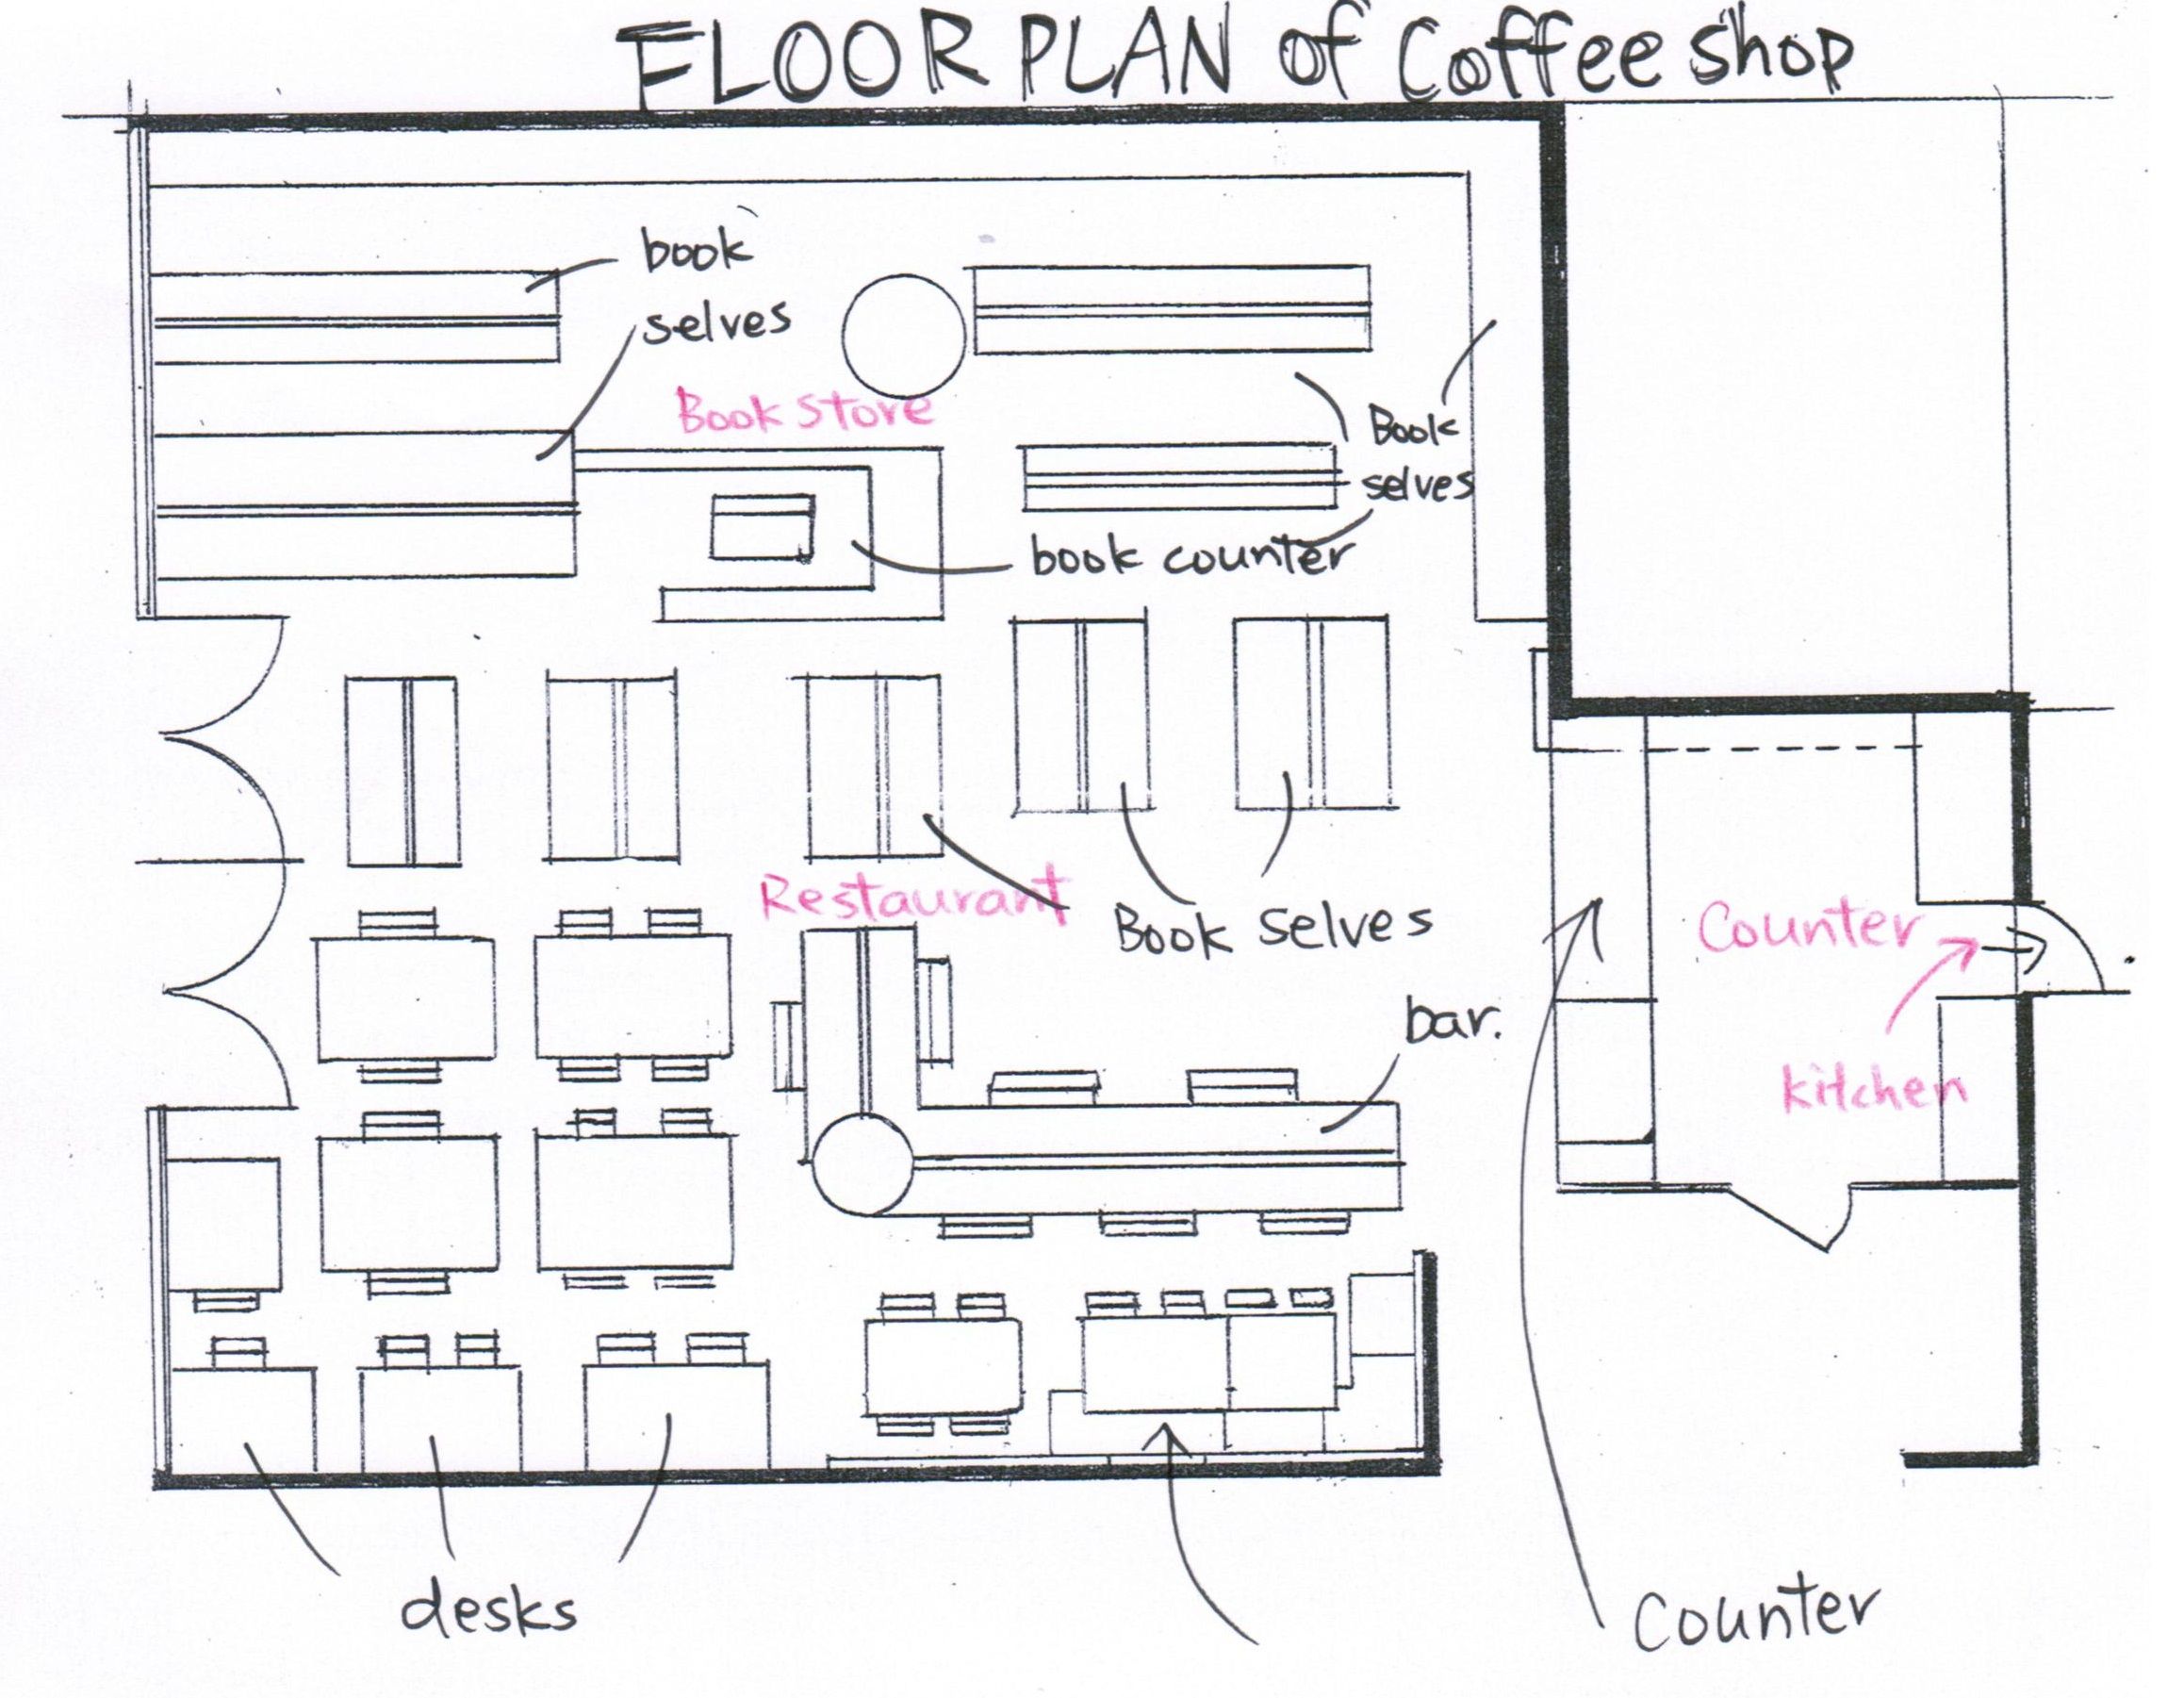 FLOOR PLAN (COFFEE SHOP) Coffee shop interior design